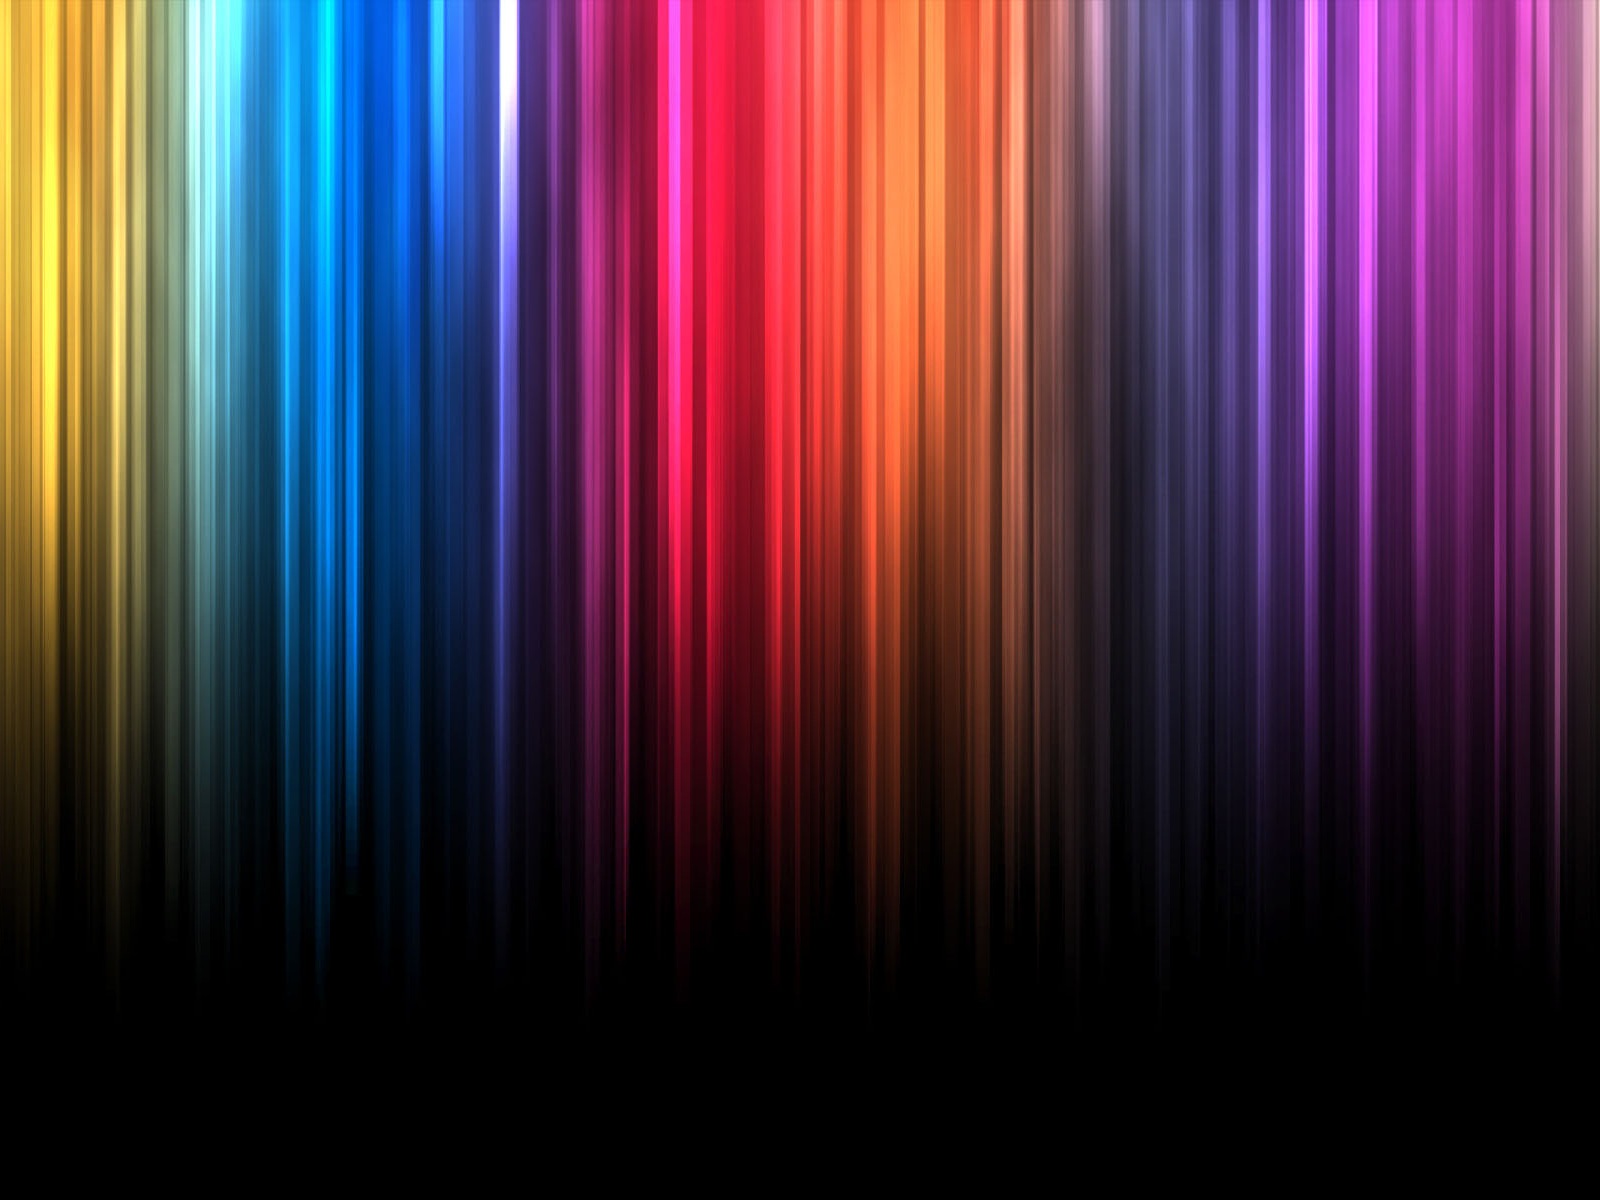 sfondo dello spettro,viola,viola,blu,leggero,linea